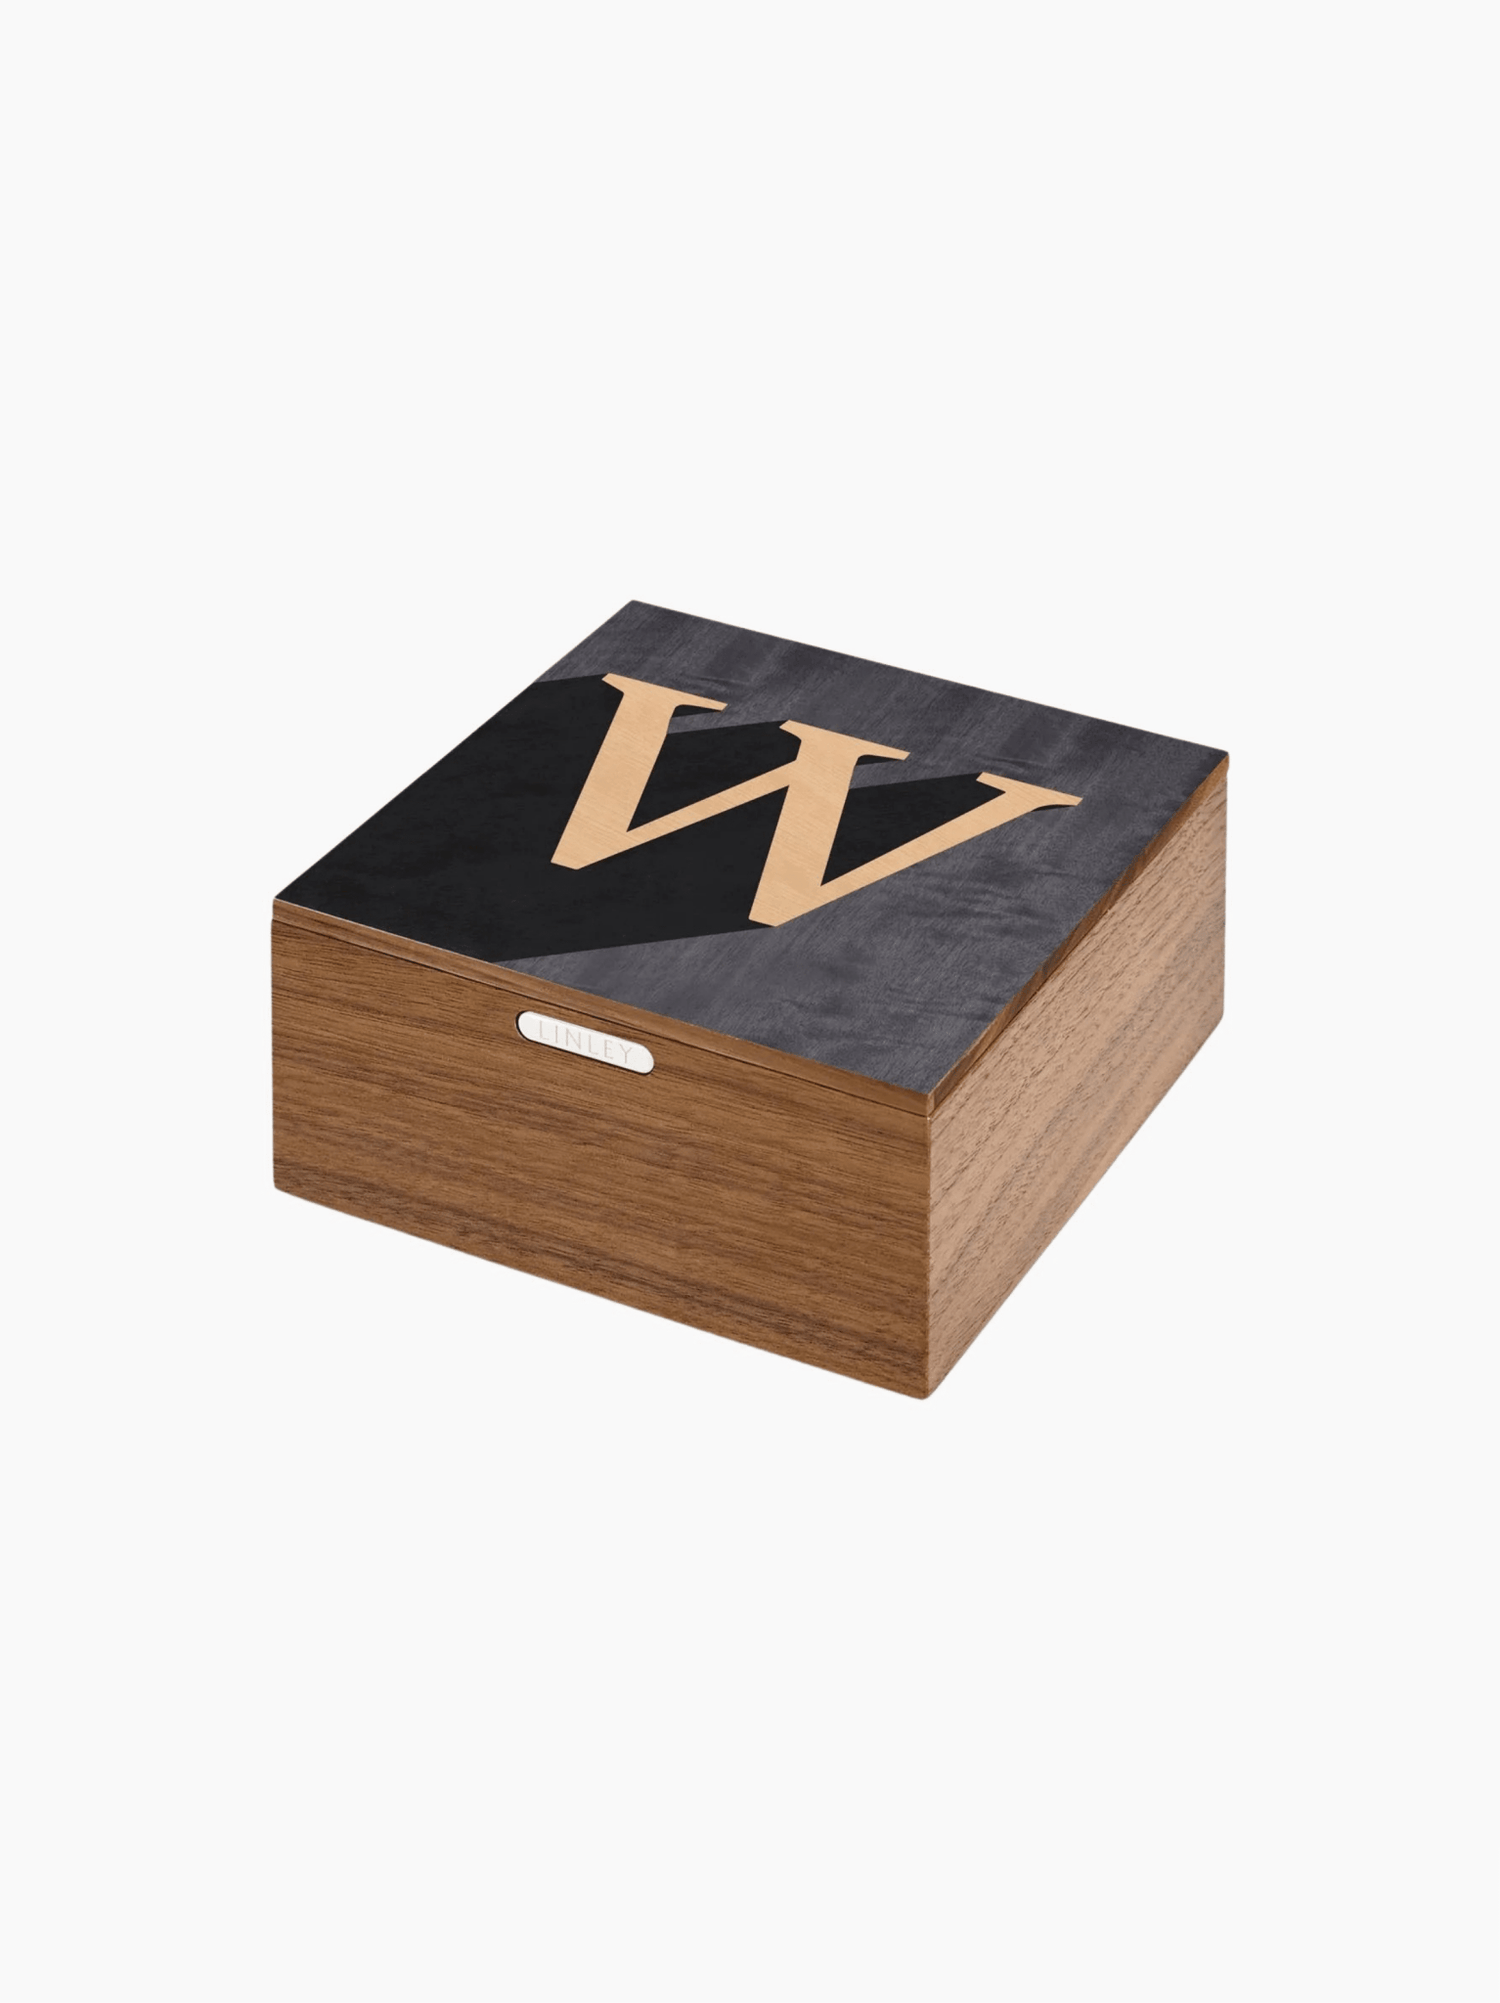 "W" Alphabet Box